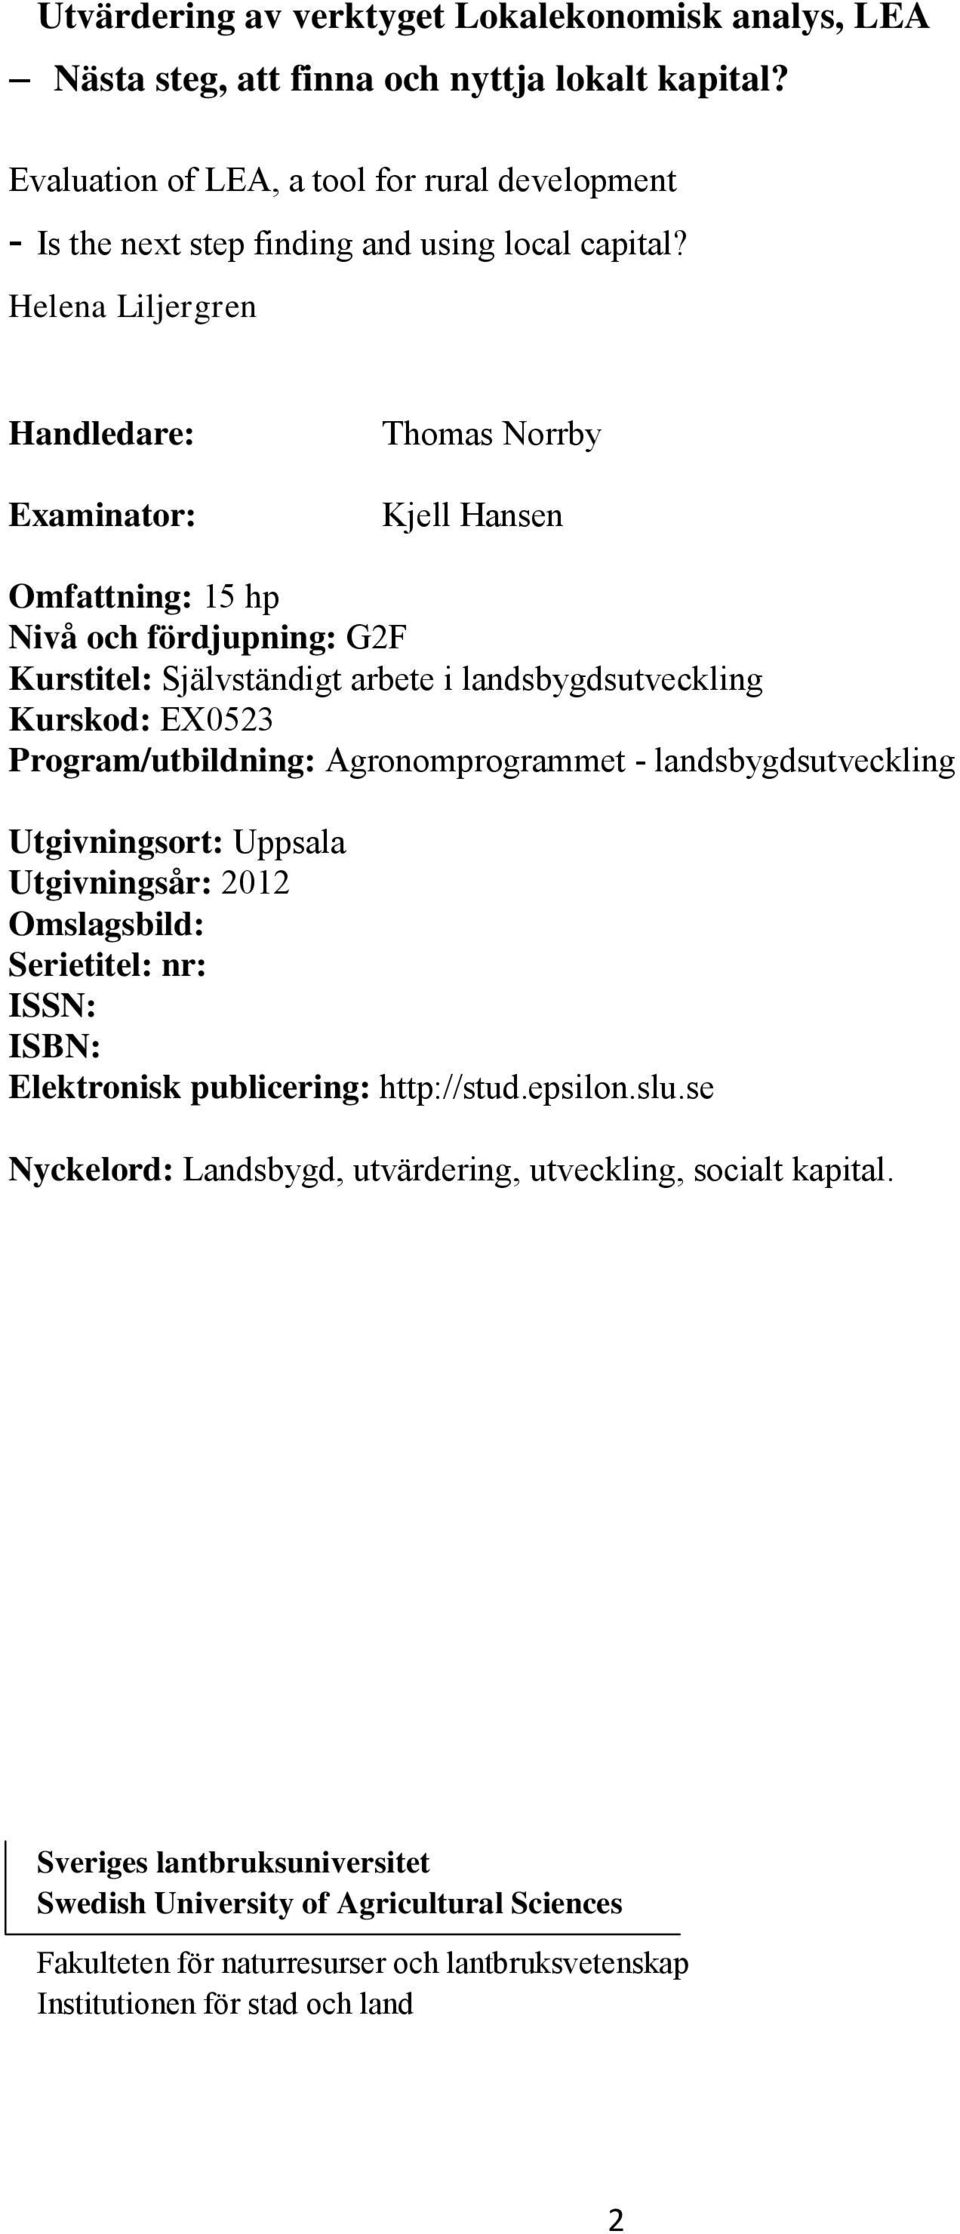 Program/utbildning: Agronomprogrammet - landsbygdsutveckling Utgivningsort: Uppsala Utgivningsår: 2012 Omslagsbild: Serietitel: nr: ISSN: ISBN: Elektronisk publicering: http://stud.epsilon.slu.